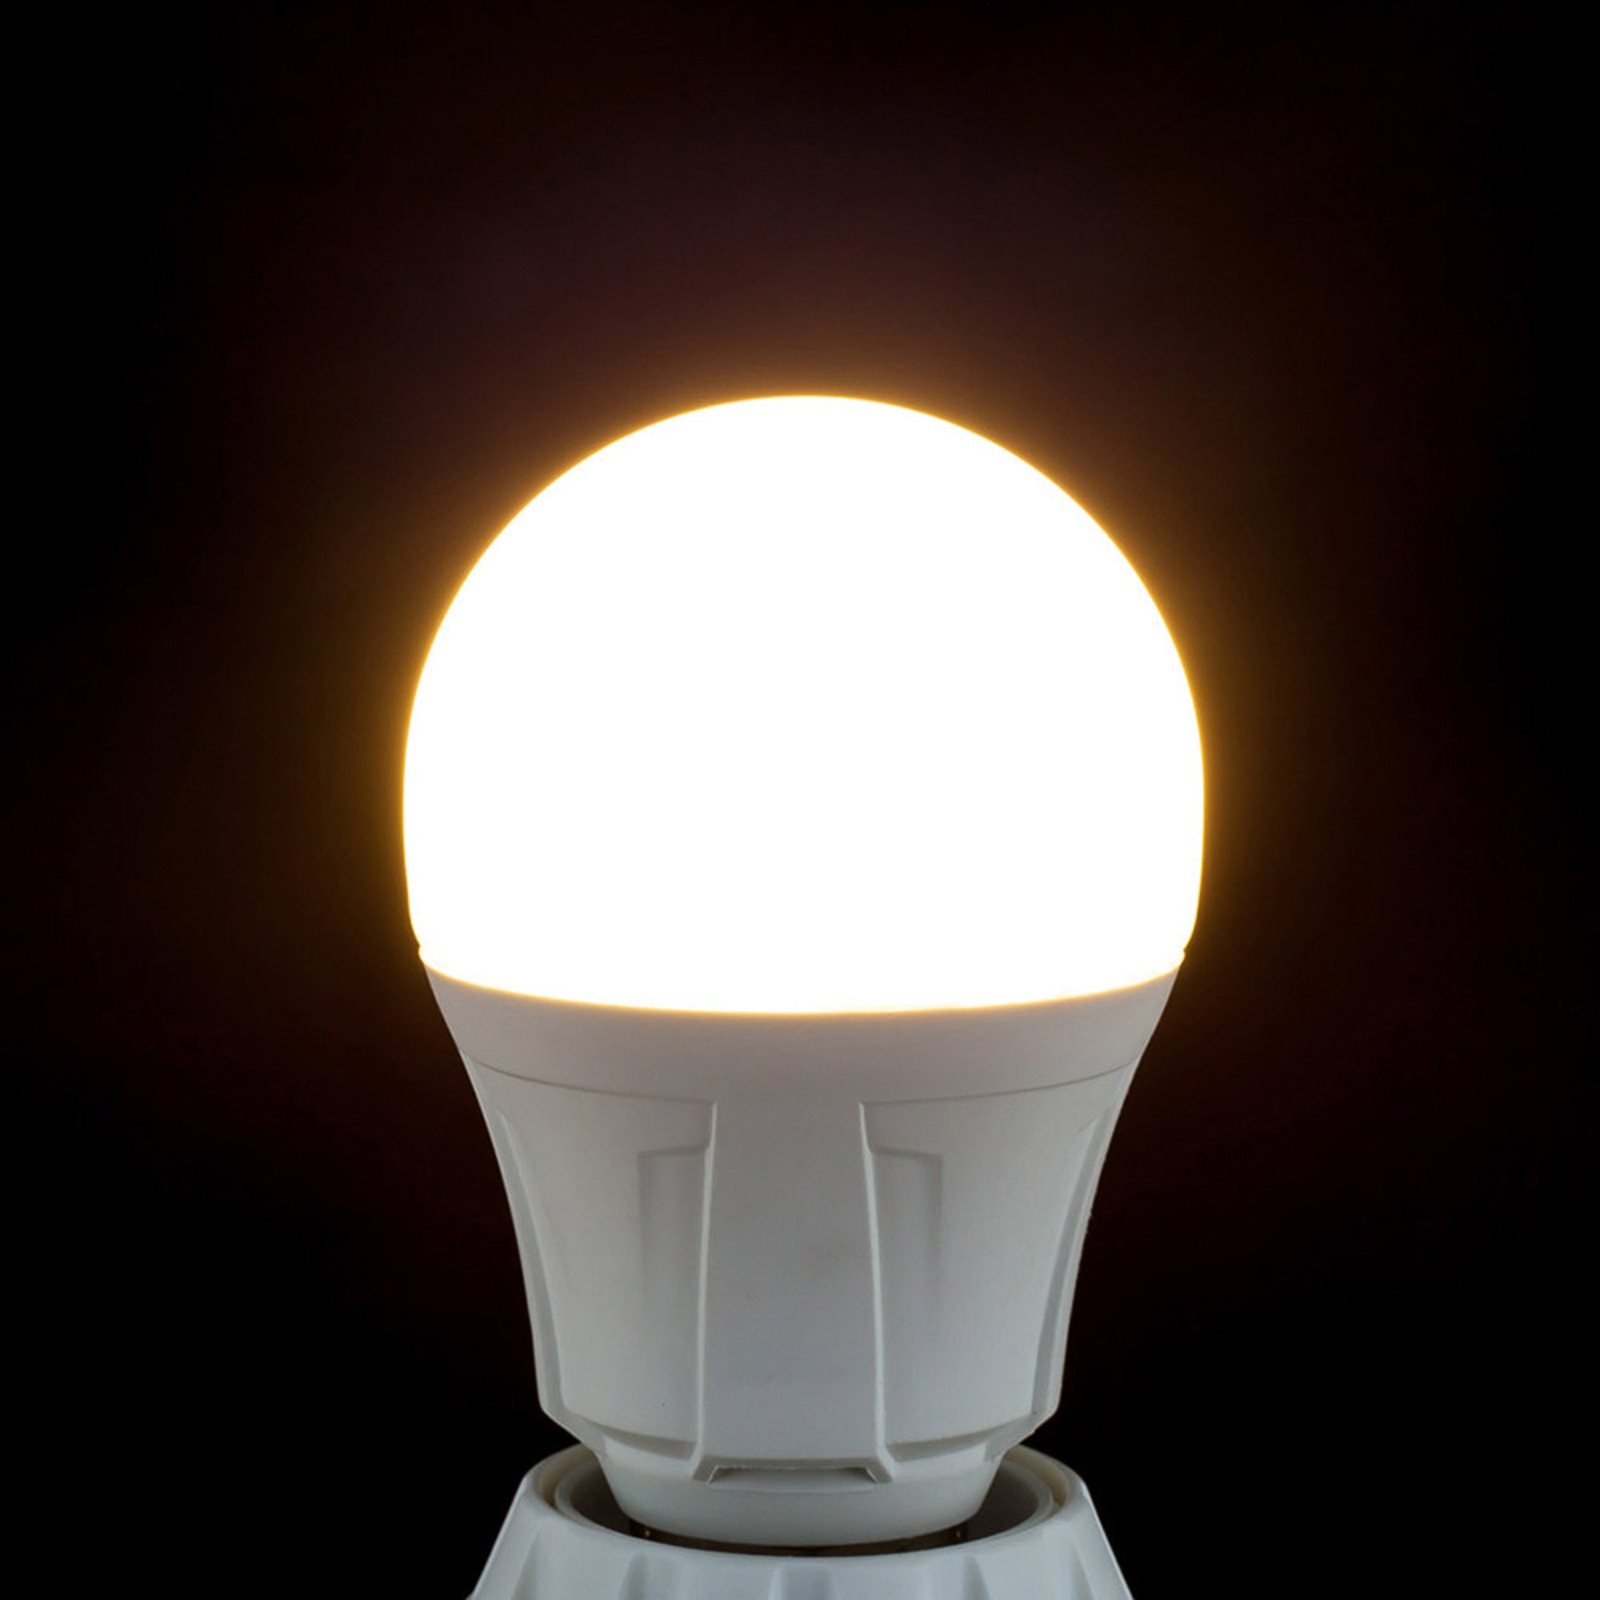 LED lamp gloeilampvorm E27 11W 830 2 per set